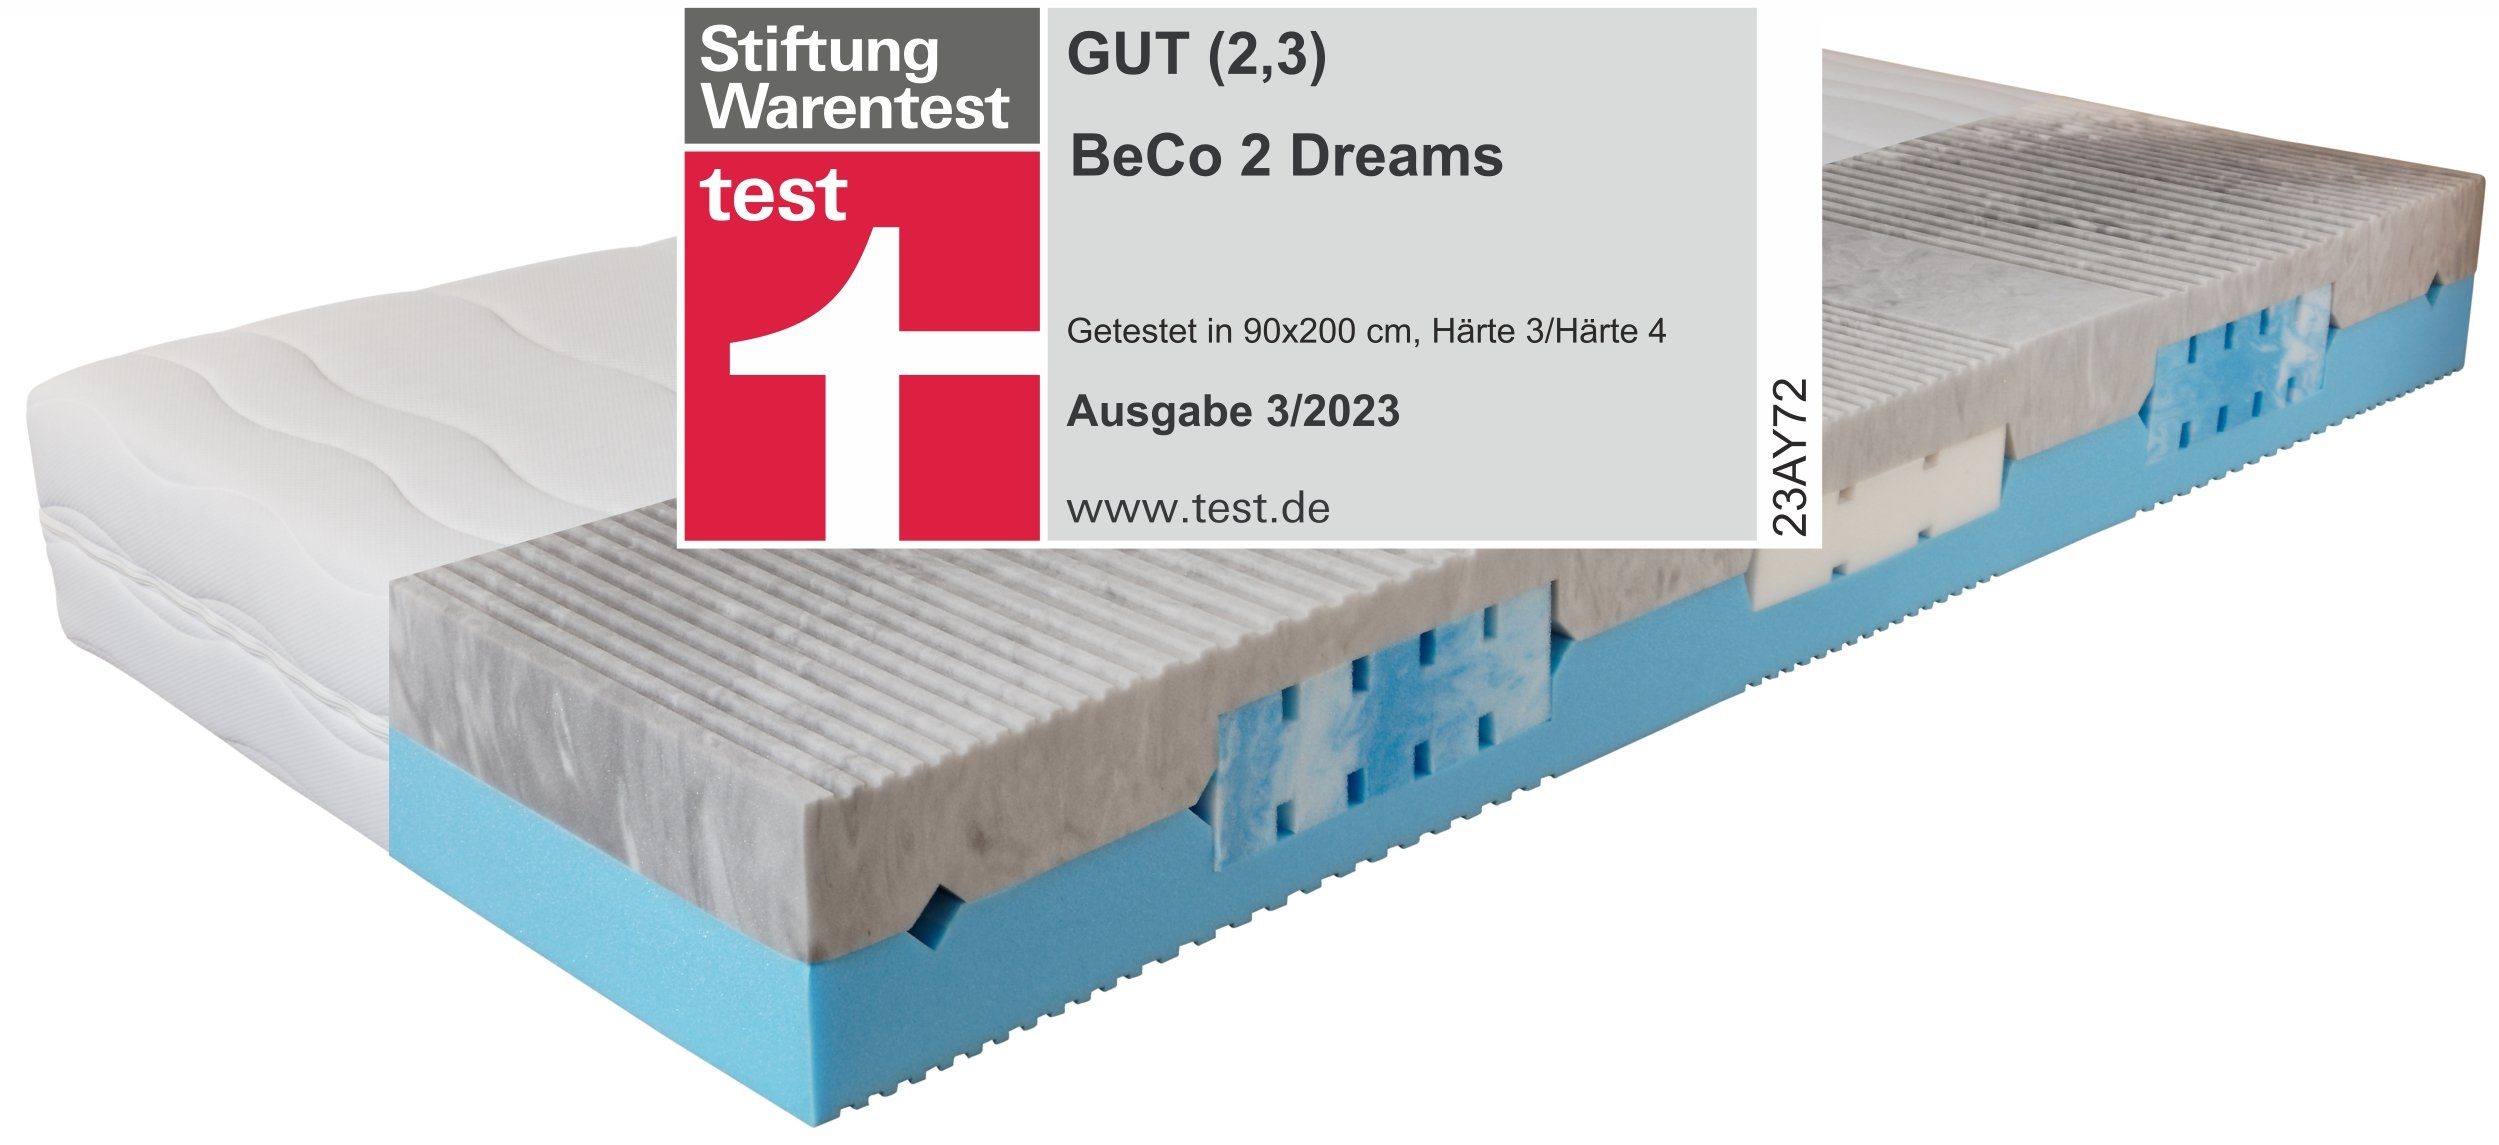 Komfortschaummatratze 2 Dreams, Testsieger H&G Test 3/2021* mit soften Gelschaumeinlegern, Beco, 21 cm hoch | Matratzen